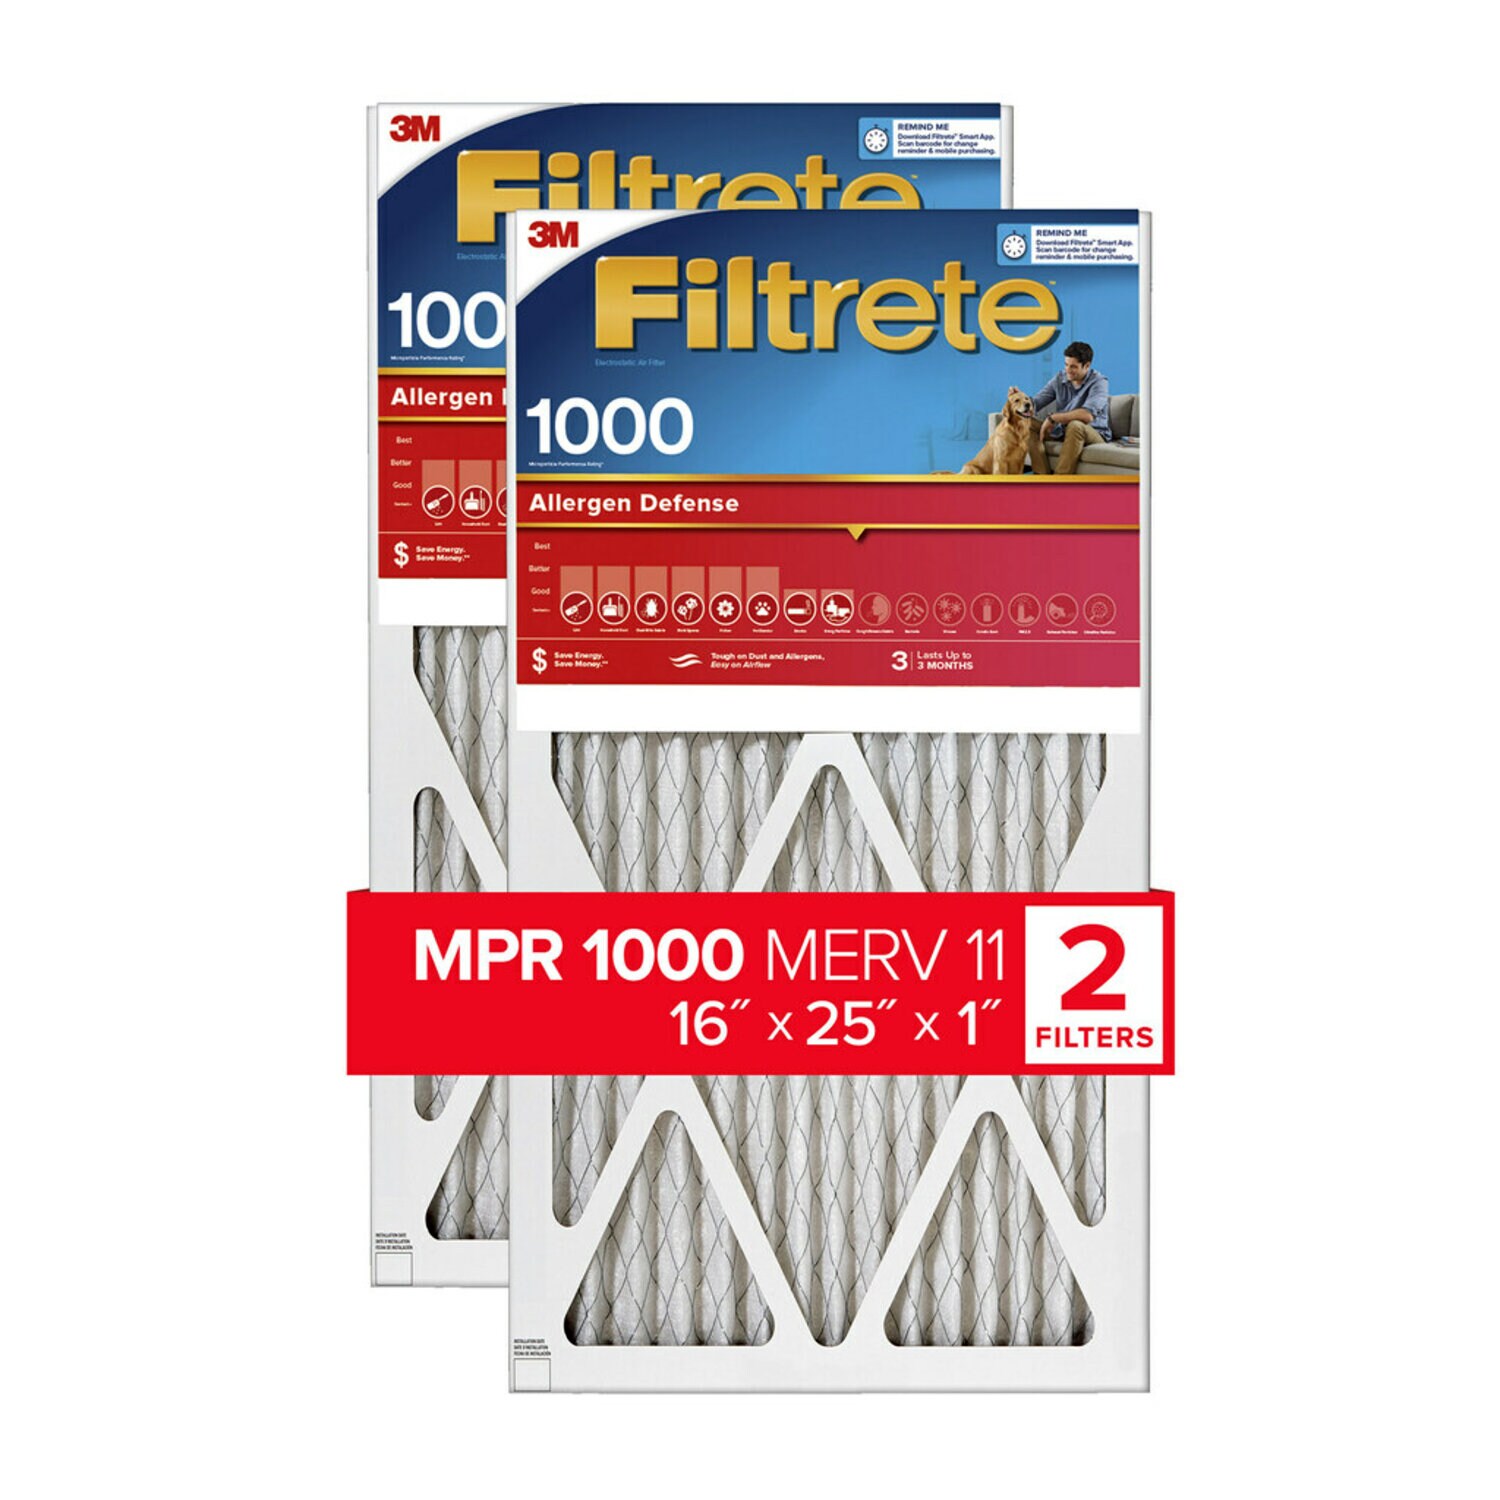 7100188262 - Filtrete Allergen Defense Air Filter, 1000 MPR, 9801-2PK-HDW, 16 in x
25 in x 1 in (40,6 cm x 63,5 cm x 2,5 cm)